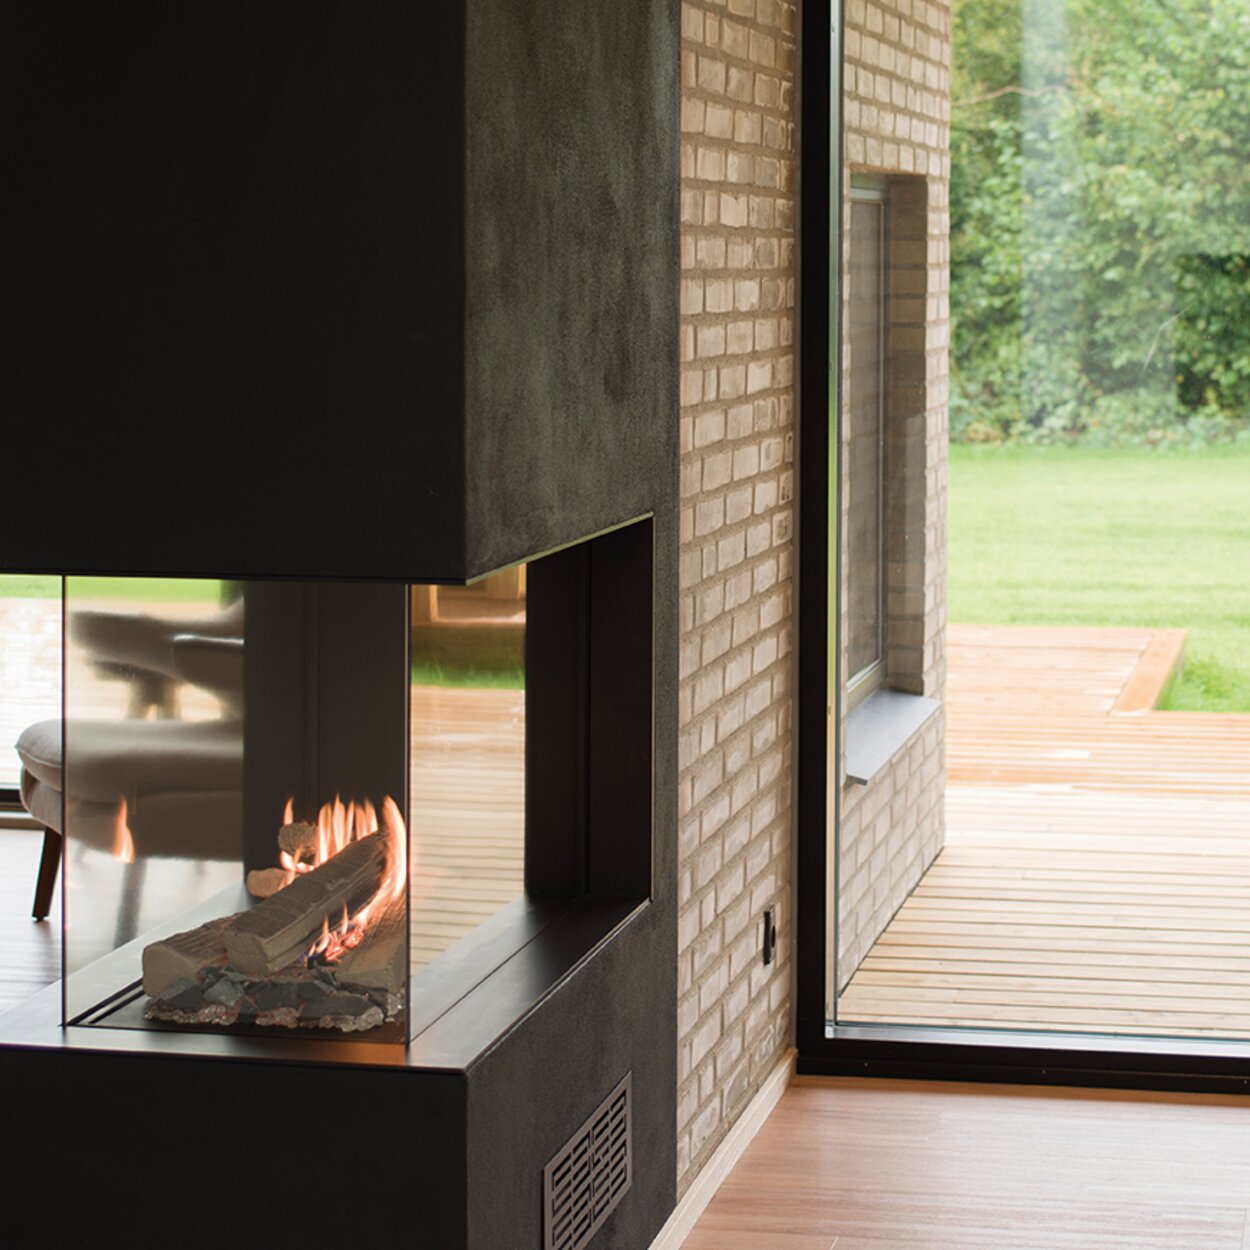 Gas-Kamin VISIO 70 RD steht als Raumteiler in einer schwarzen Trennwand und strukturiert so den eleganten Wohnraum mit Holzboden und grossen Fenstertüren in den Garten